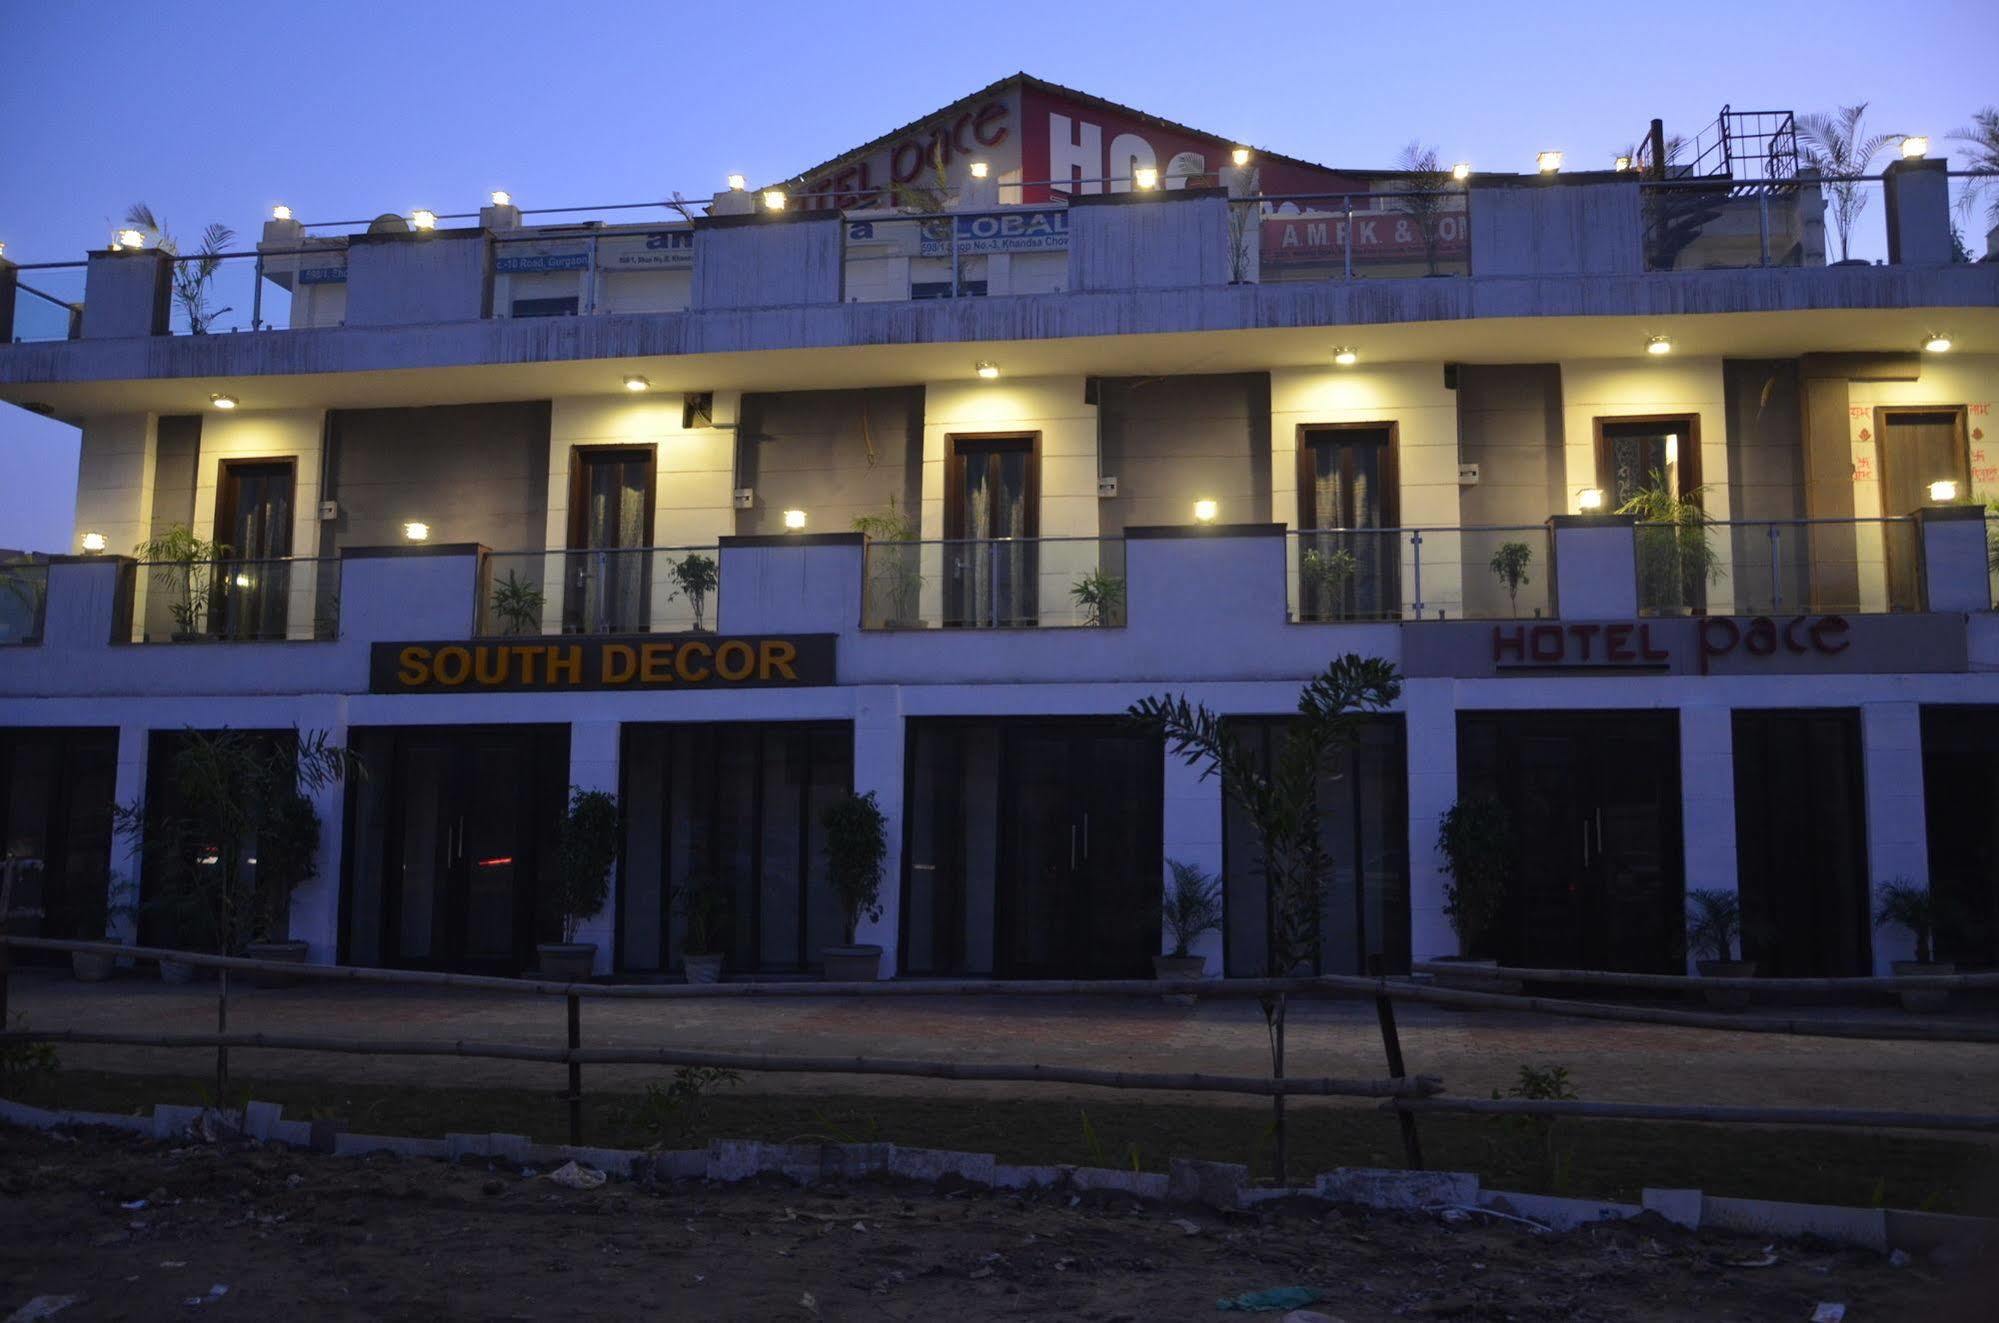 Hotel Pace Gurgaon Extérieur photo